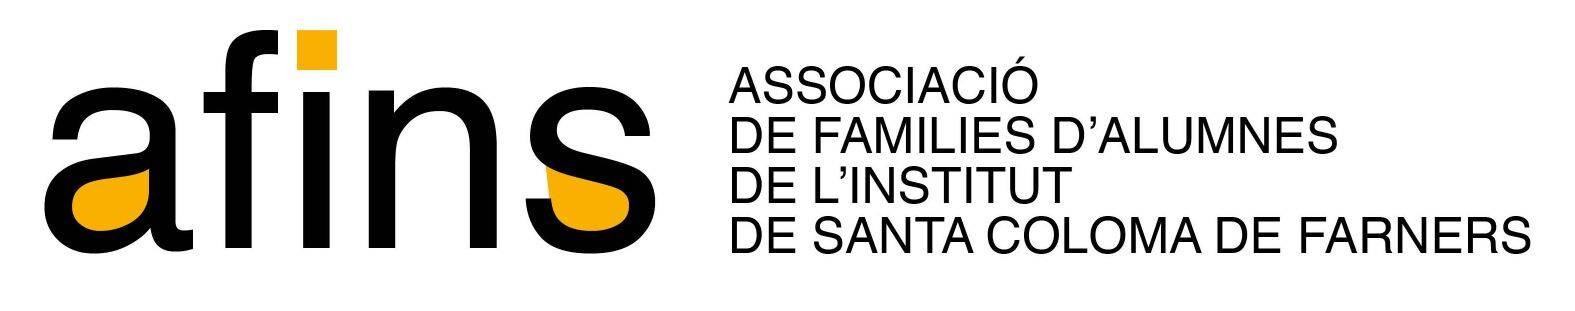 Presentació d'AFINS (Associació de Famílies de l'INStitut): dijous 18 de maig, 19.30 h.